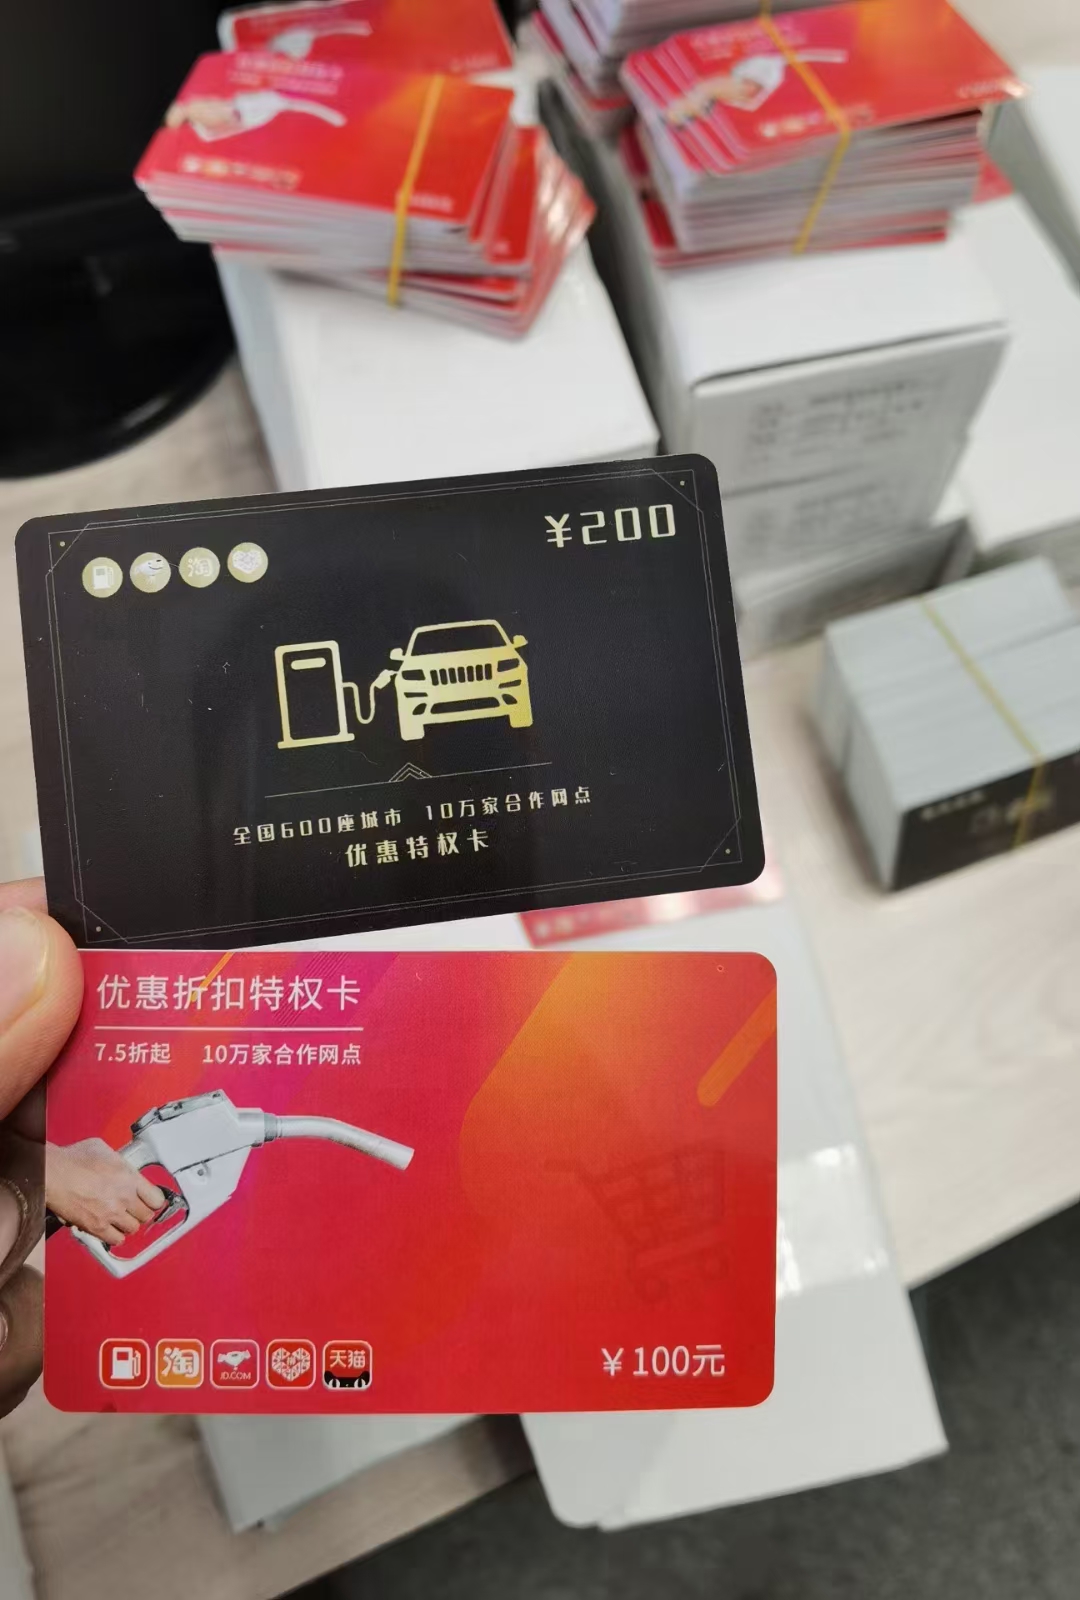 上海加油8折软件优惠加油卡系统 加油折扣卡源头